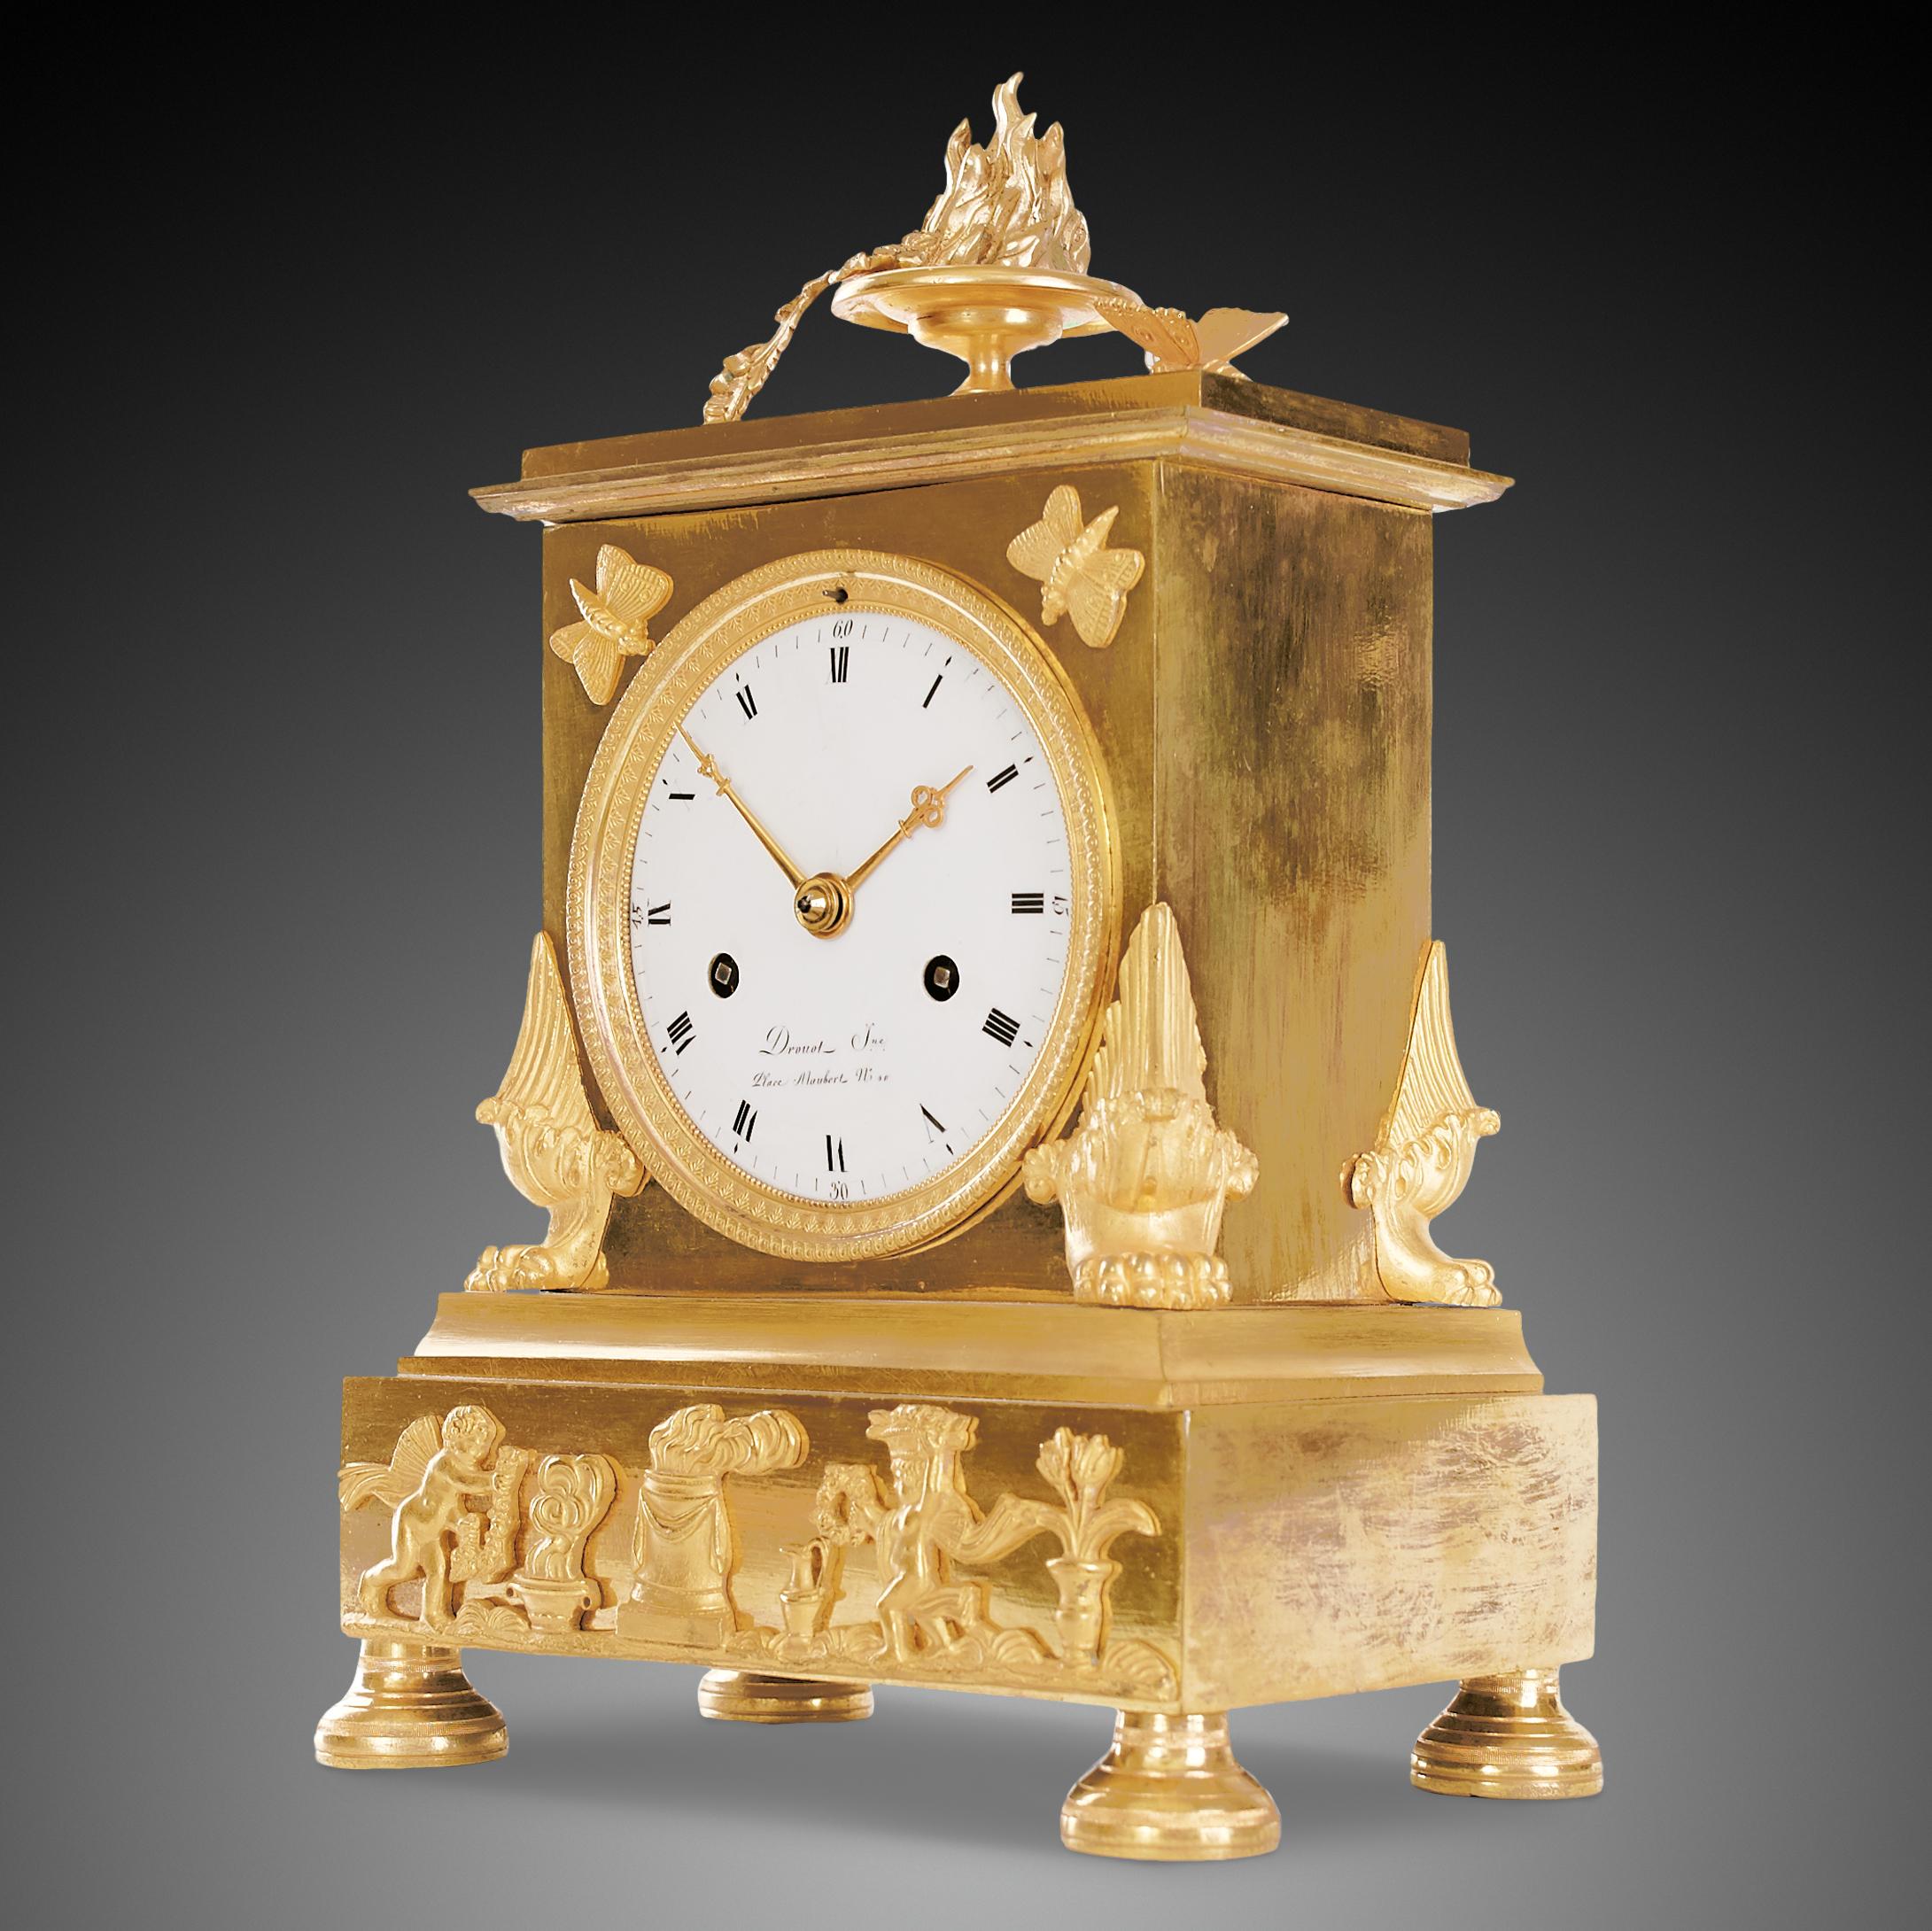 Die Uhr befindet sich in einem ausgezeichneten und perfekt funktionierenden Zustand. Darüber hinaus wurde es kürzlich von einem professionellen Uhrmacher gereinigt und gewartet, der sich auf die Aufbewahrung von Museen spezialisiert hat. Das